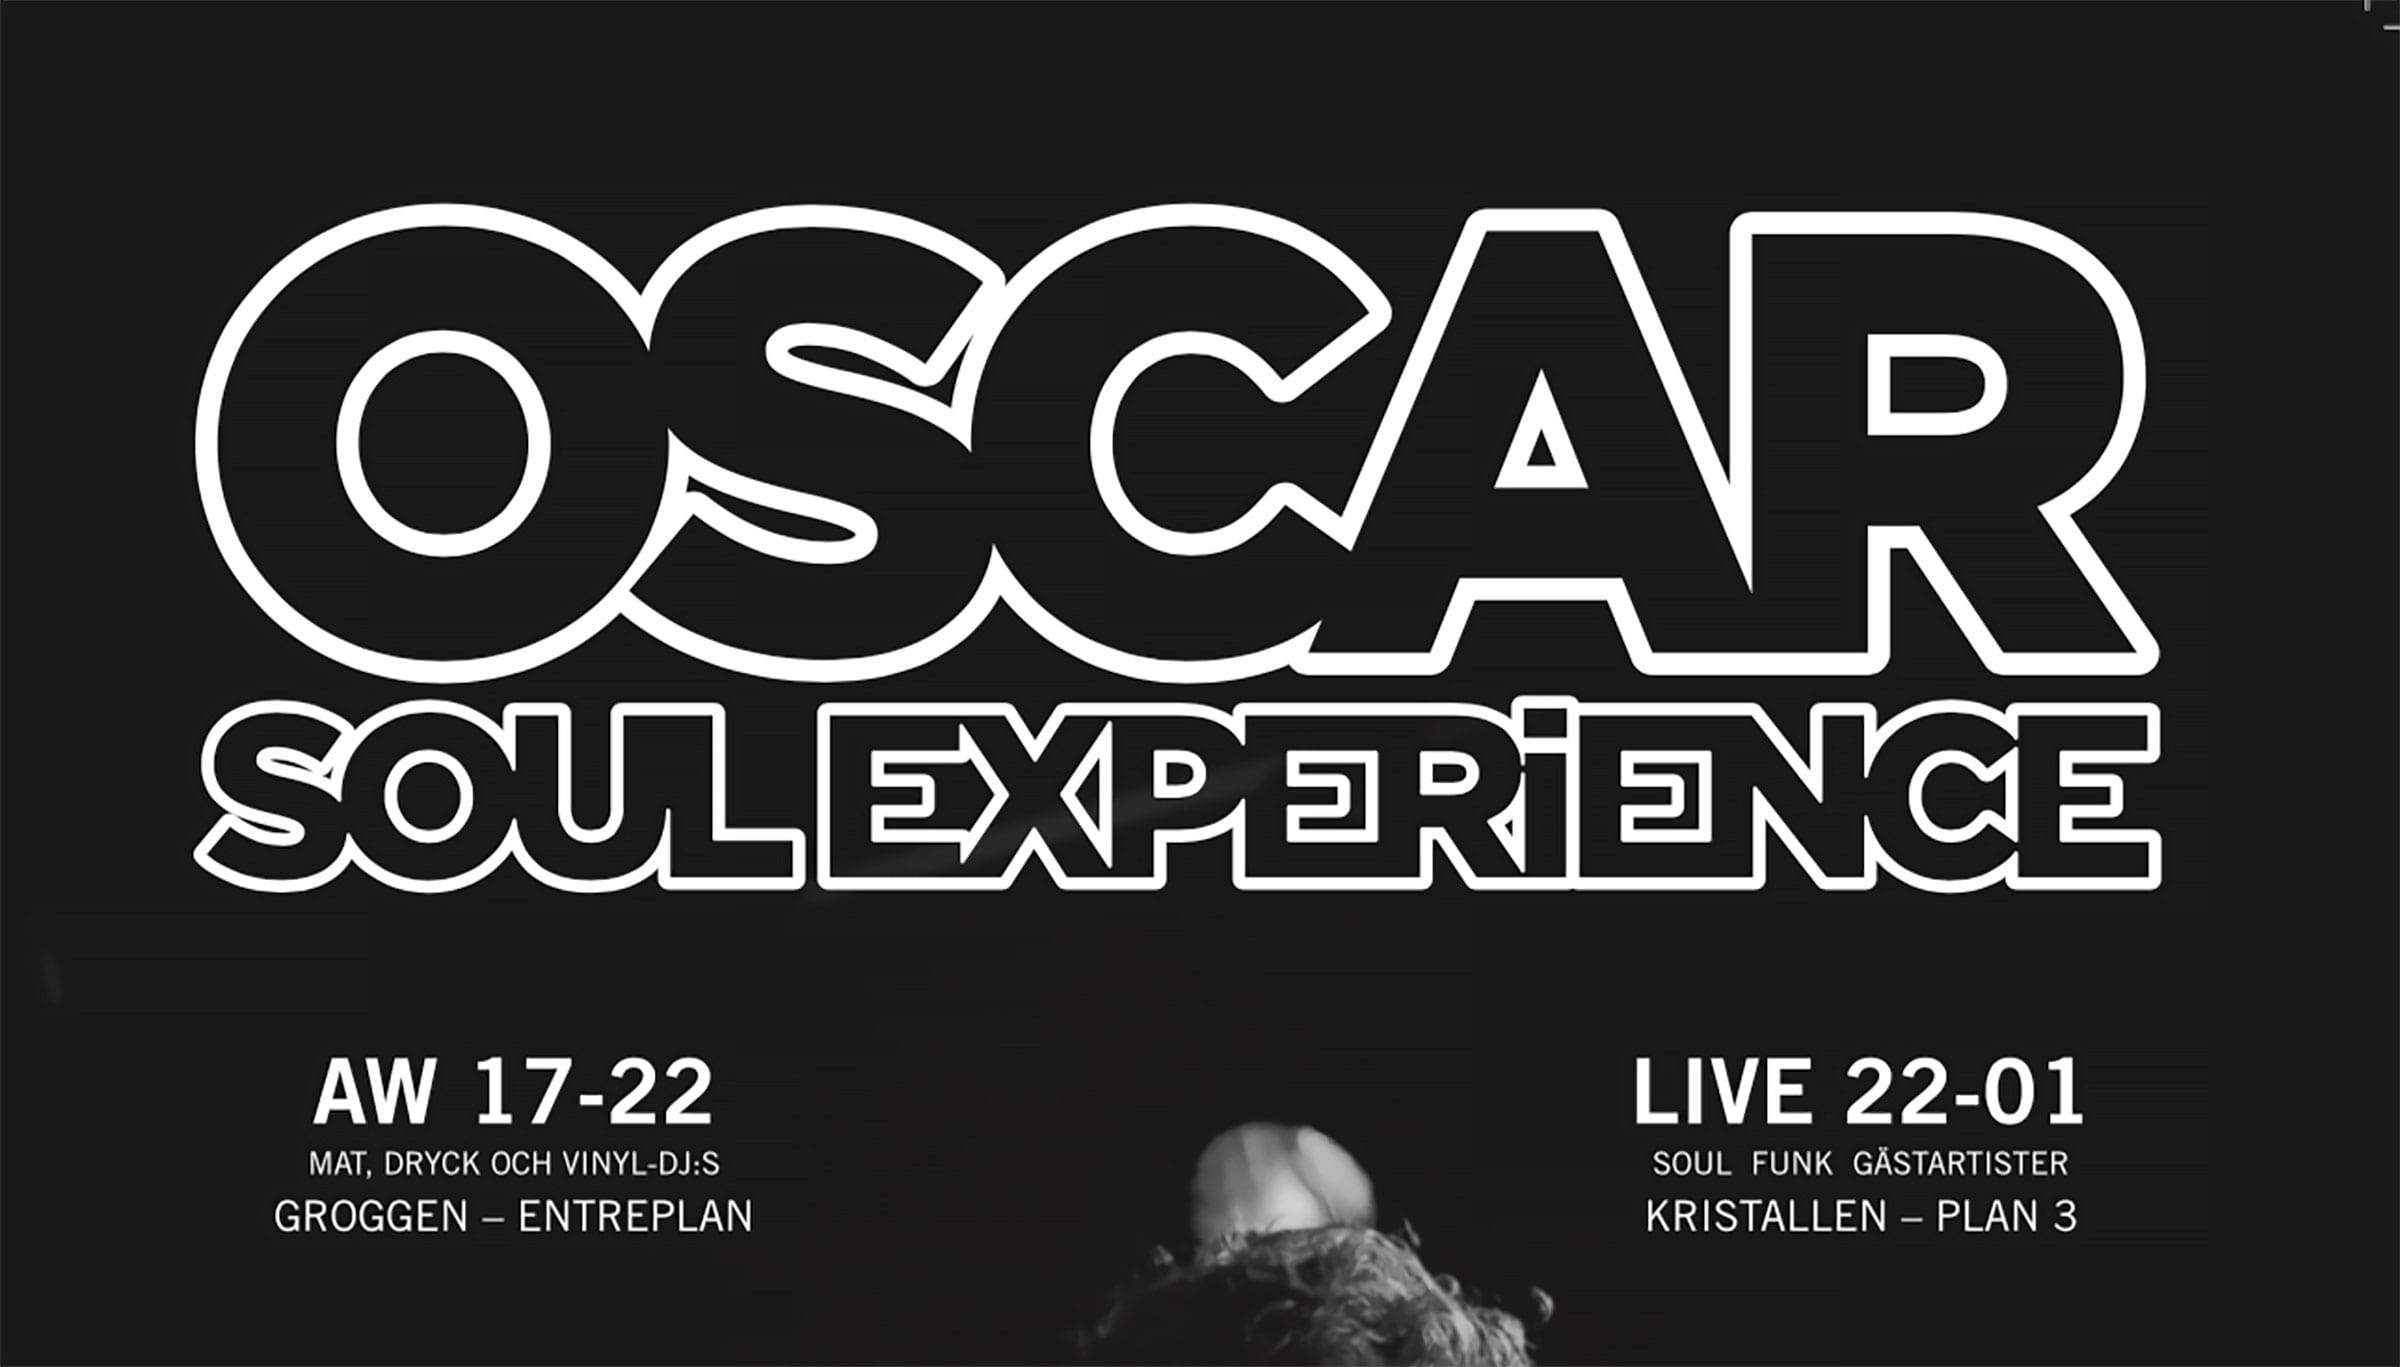 OSCAR Soul Experience på Södra Teatern